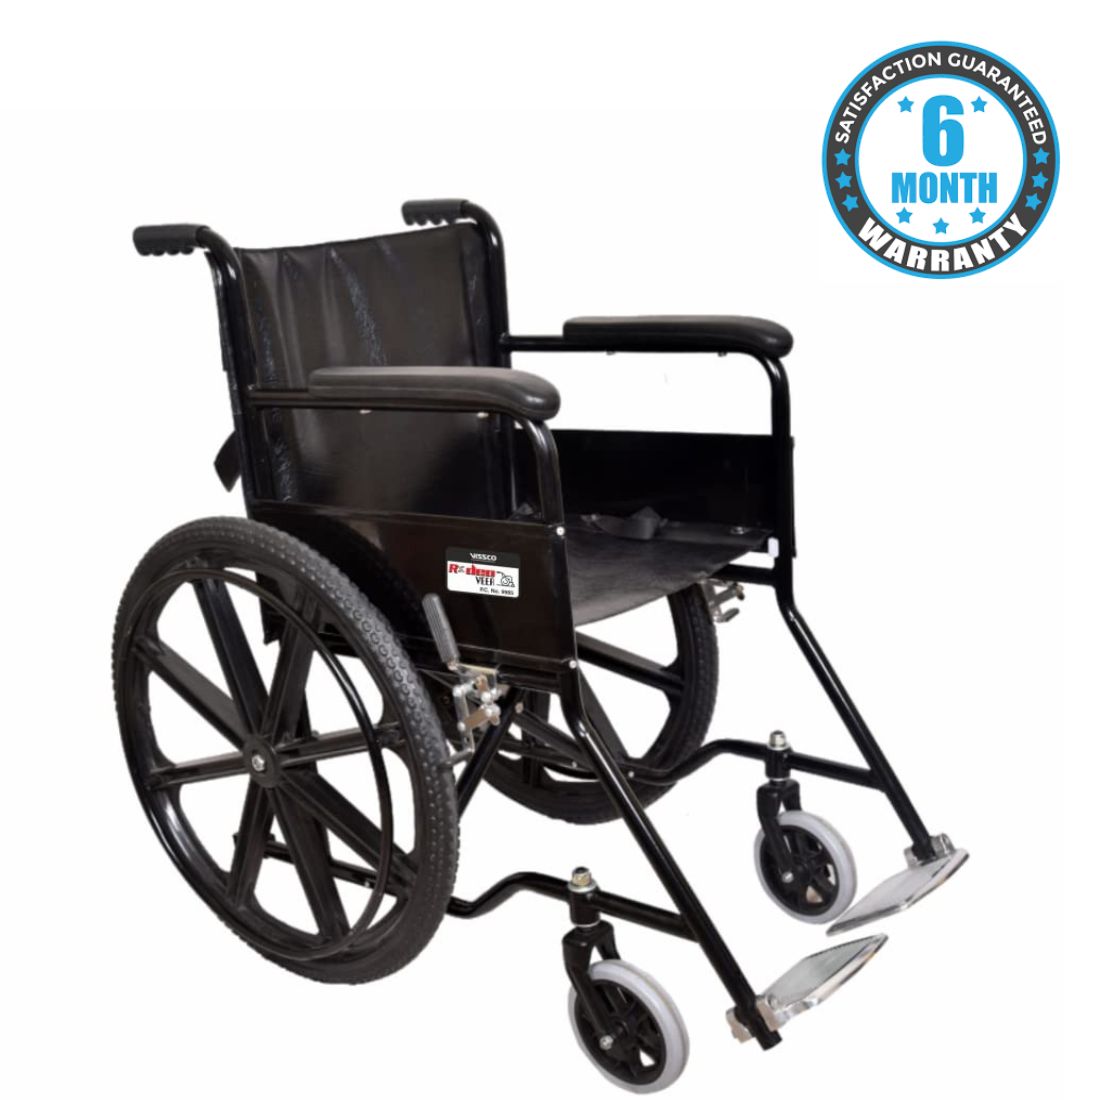 Wheelchair for best price in chennai